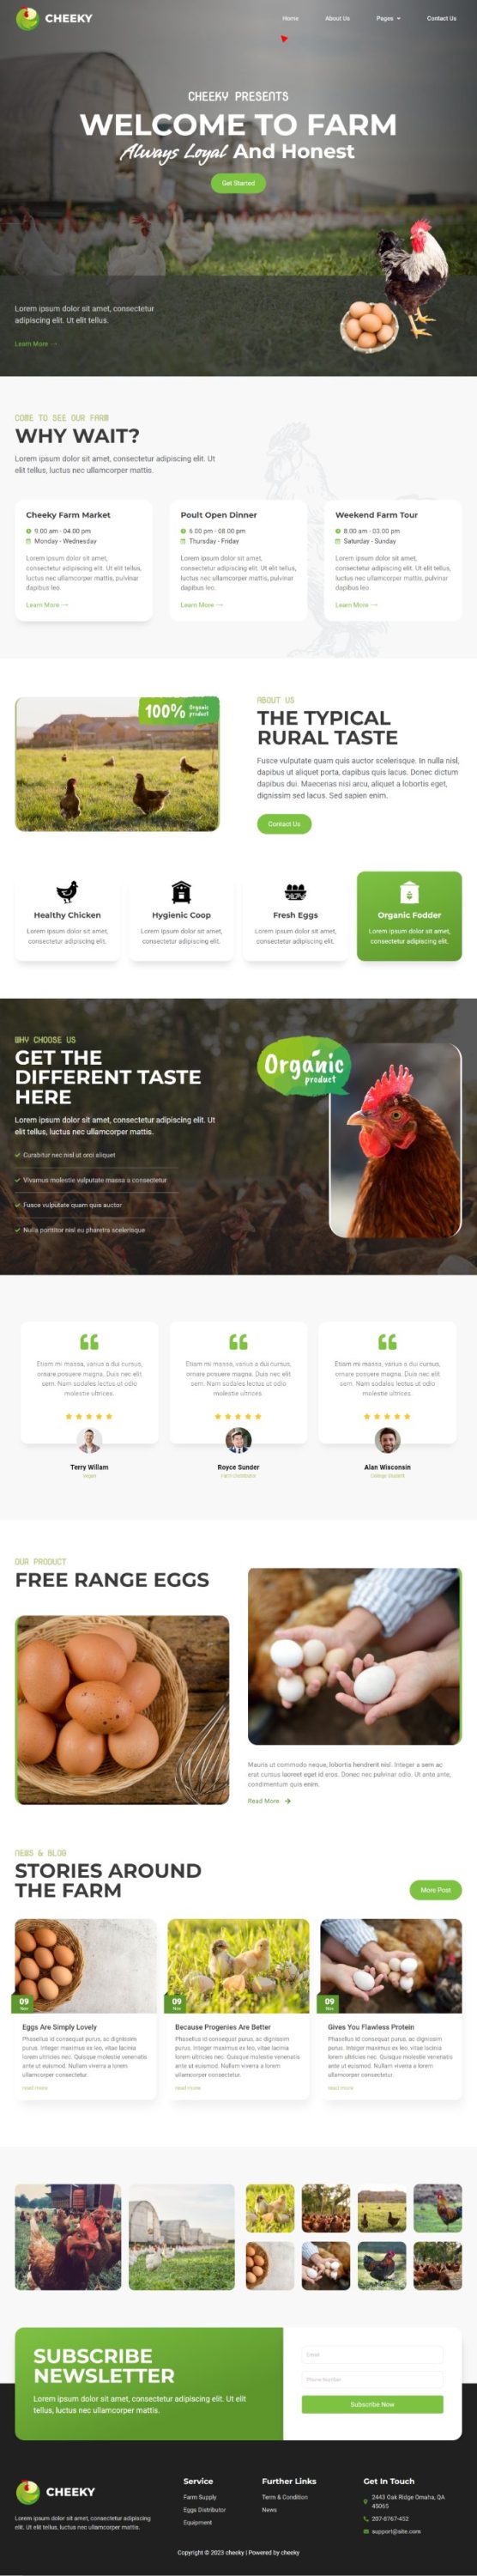 Template website bán hàng sản phẩm nông nghiệp - Cheeky